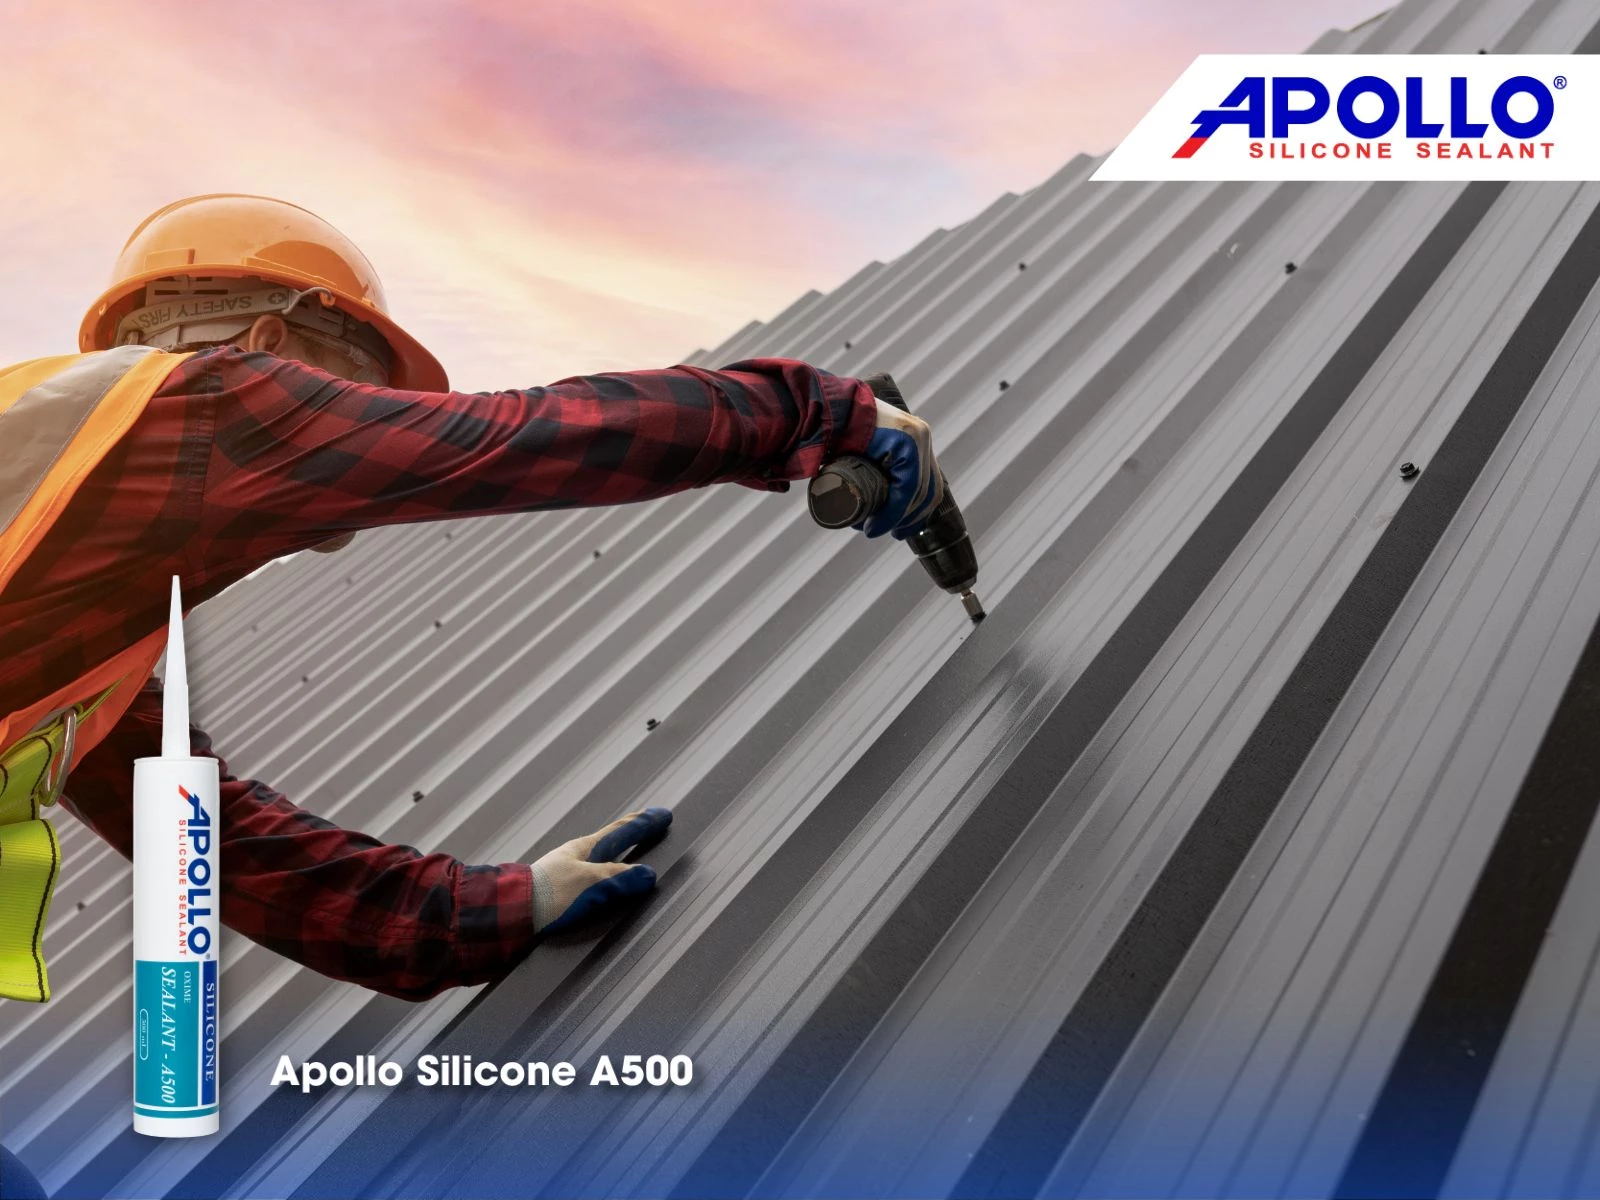 Apollo Silicone A500 mang lại hiệu quả chống thấm lỗ đinh mái nhà hiệu quả, vượt trội